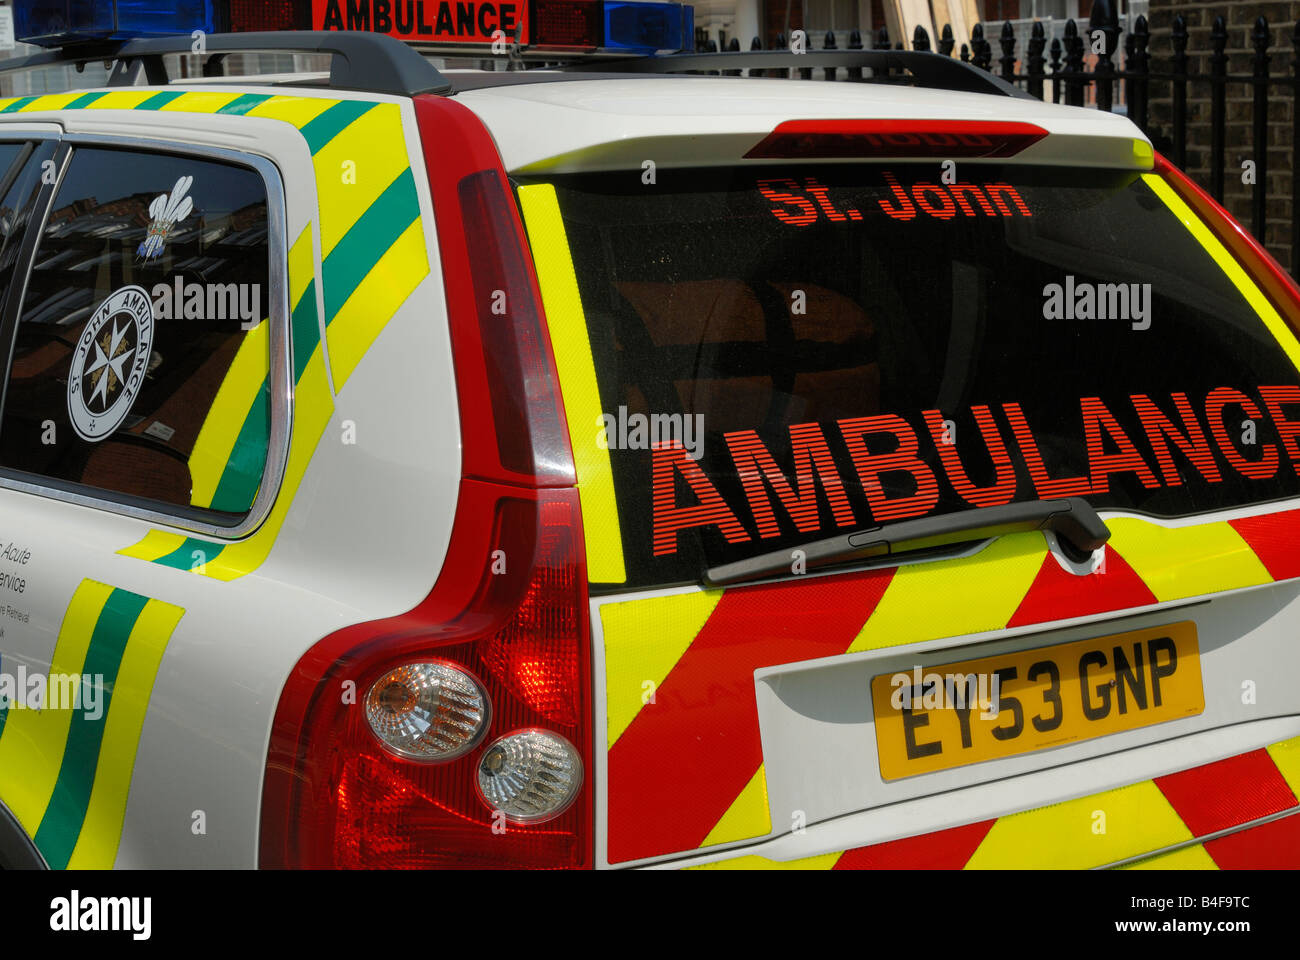 St John Ambulance vehicle rear Stock Photo